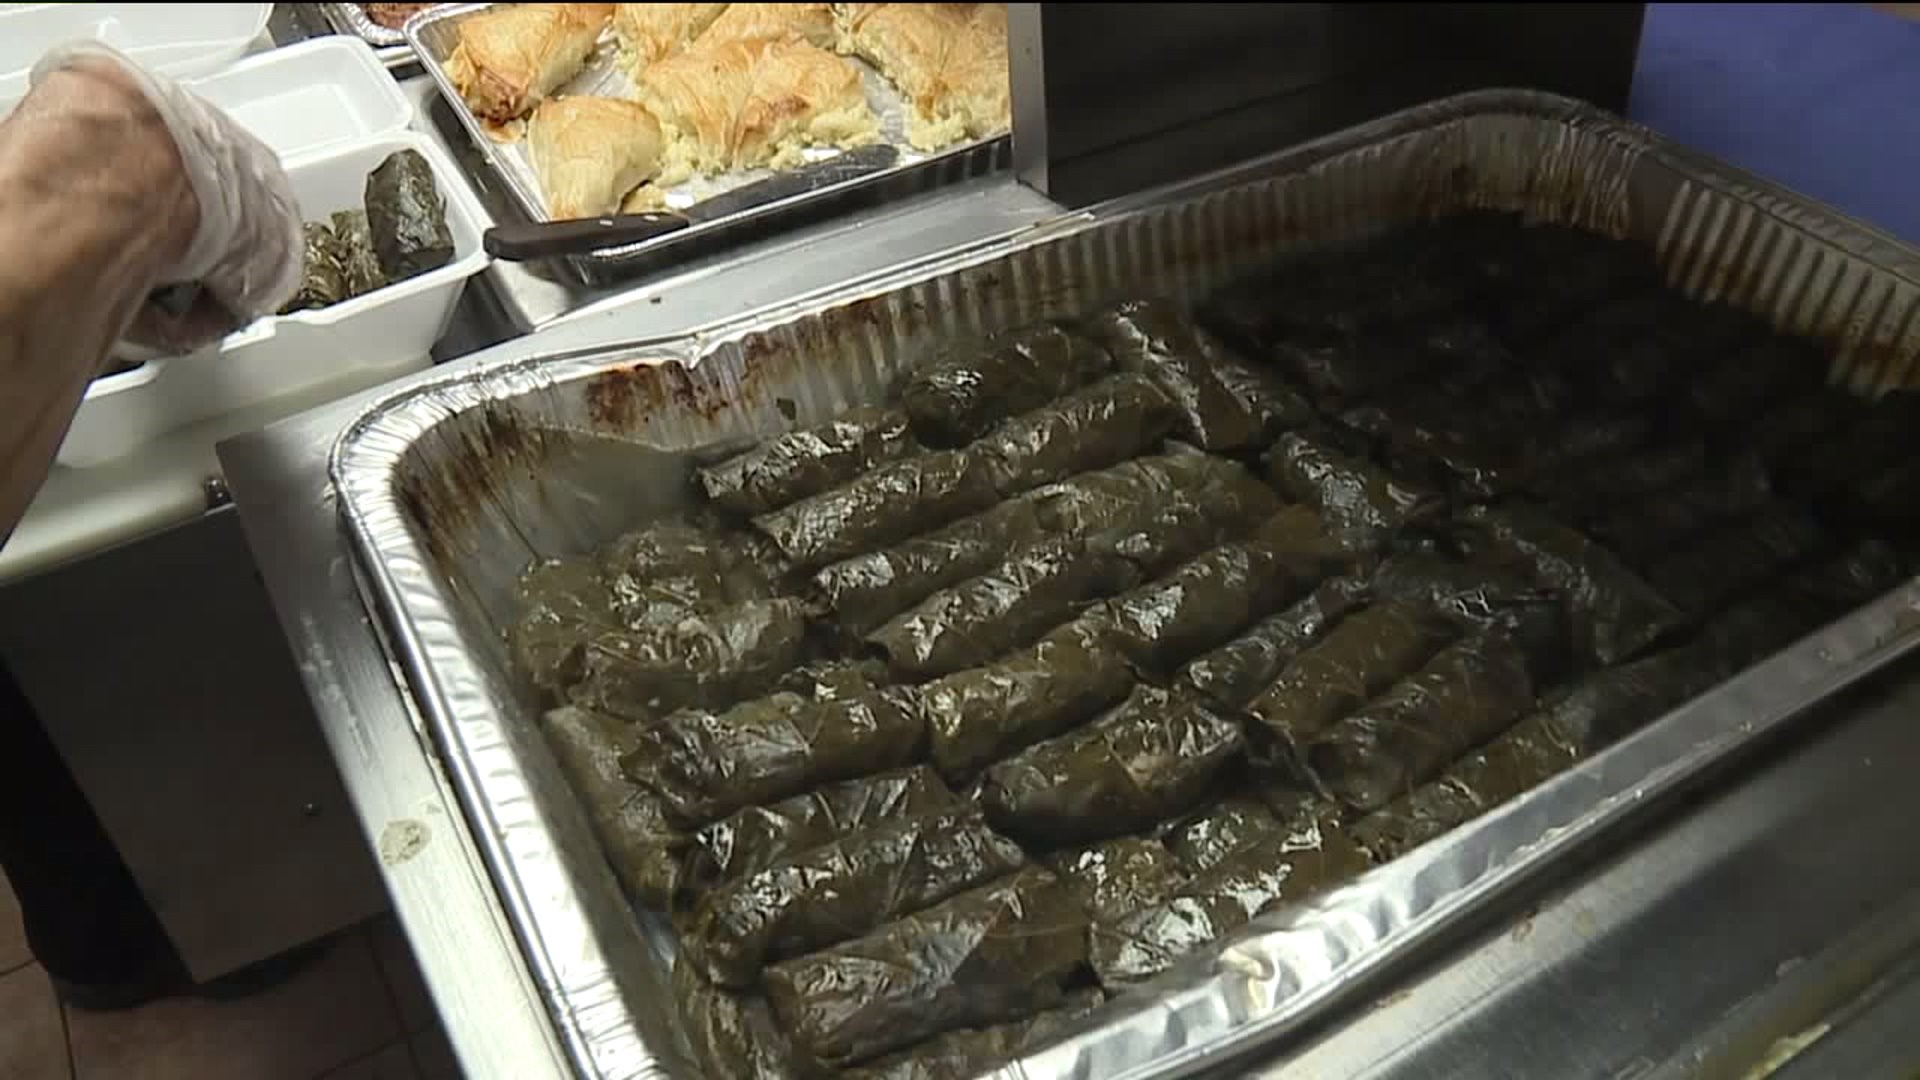 Greek Food Festival Kicks off in Wilkes-Barre